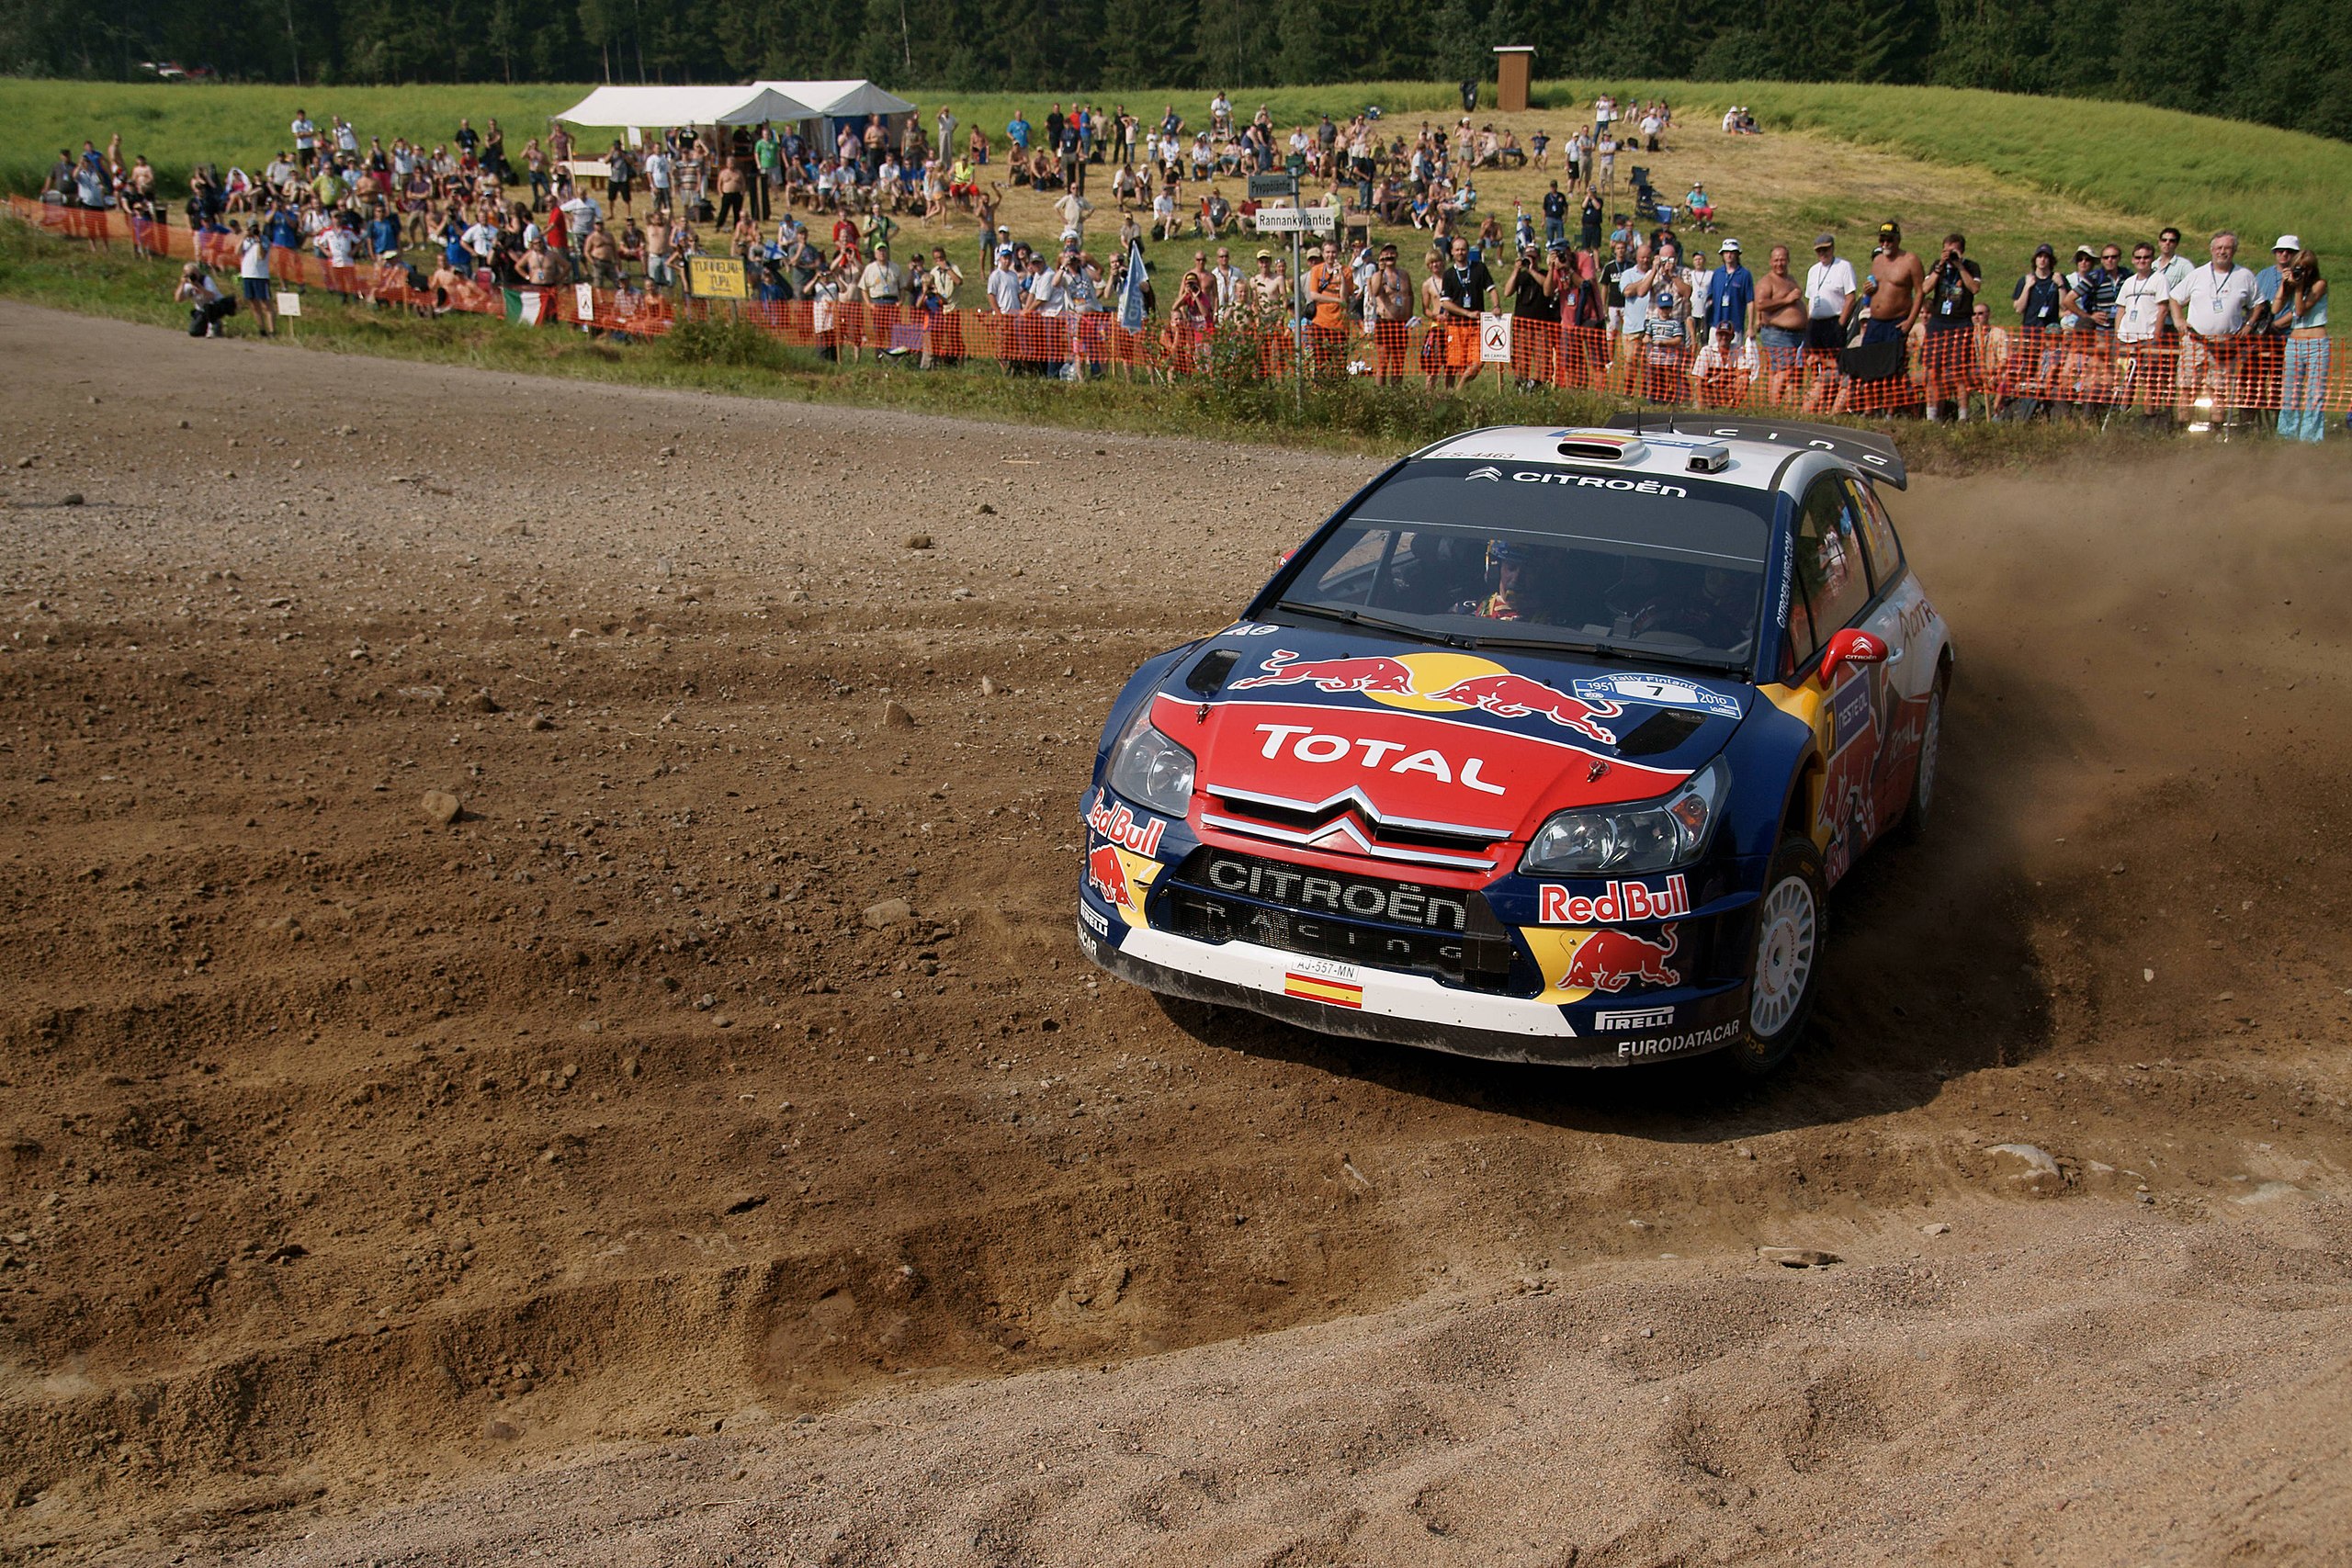 File:Rally Finland 2010 - shakedown - Dani Sordo 2.jpg - Wikipedia